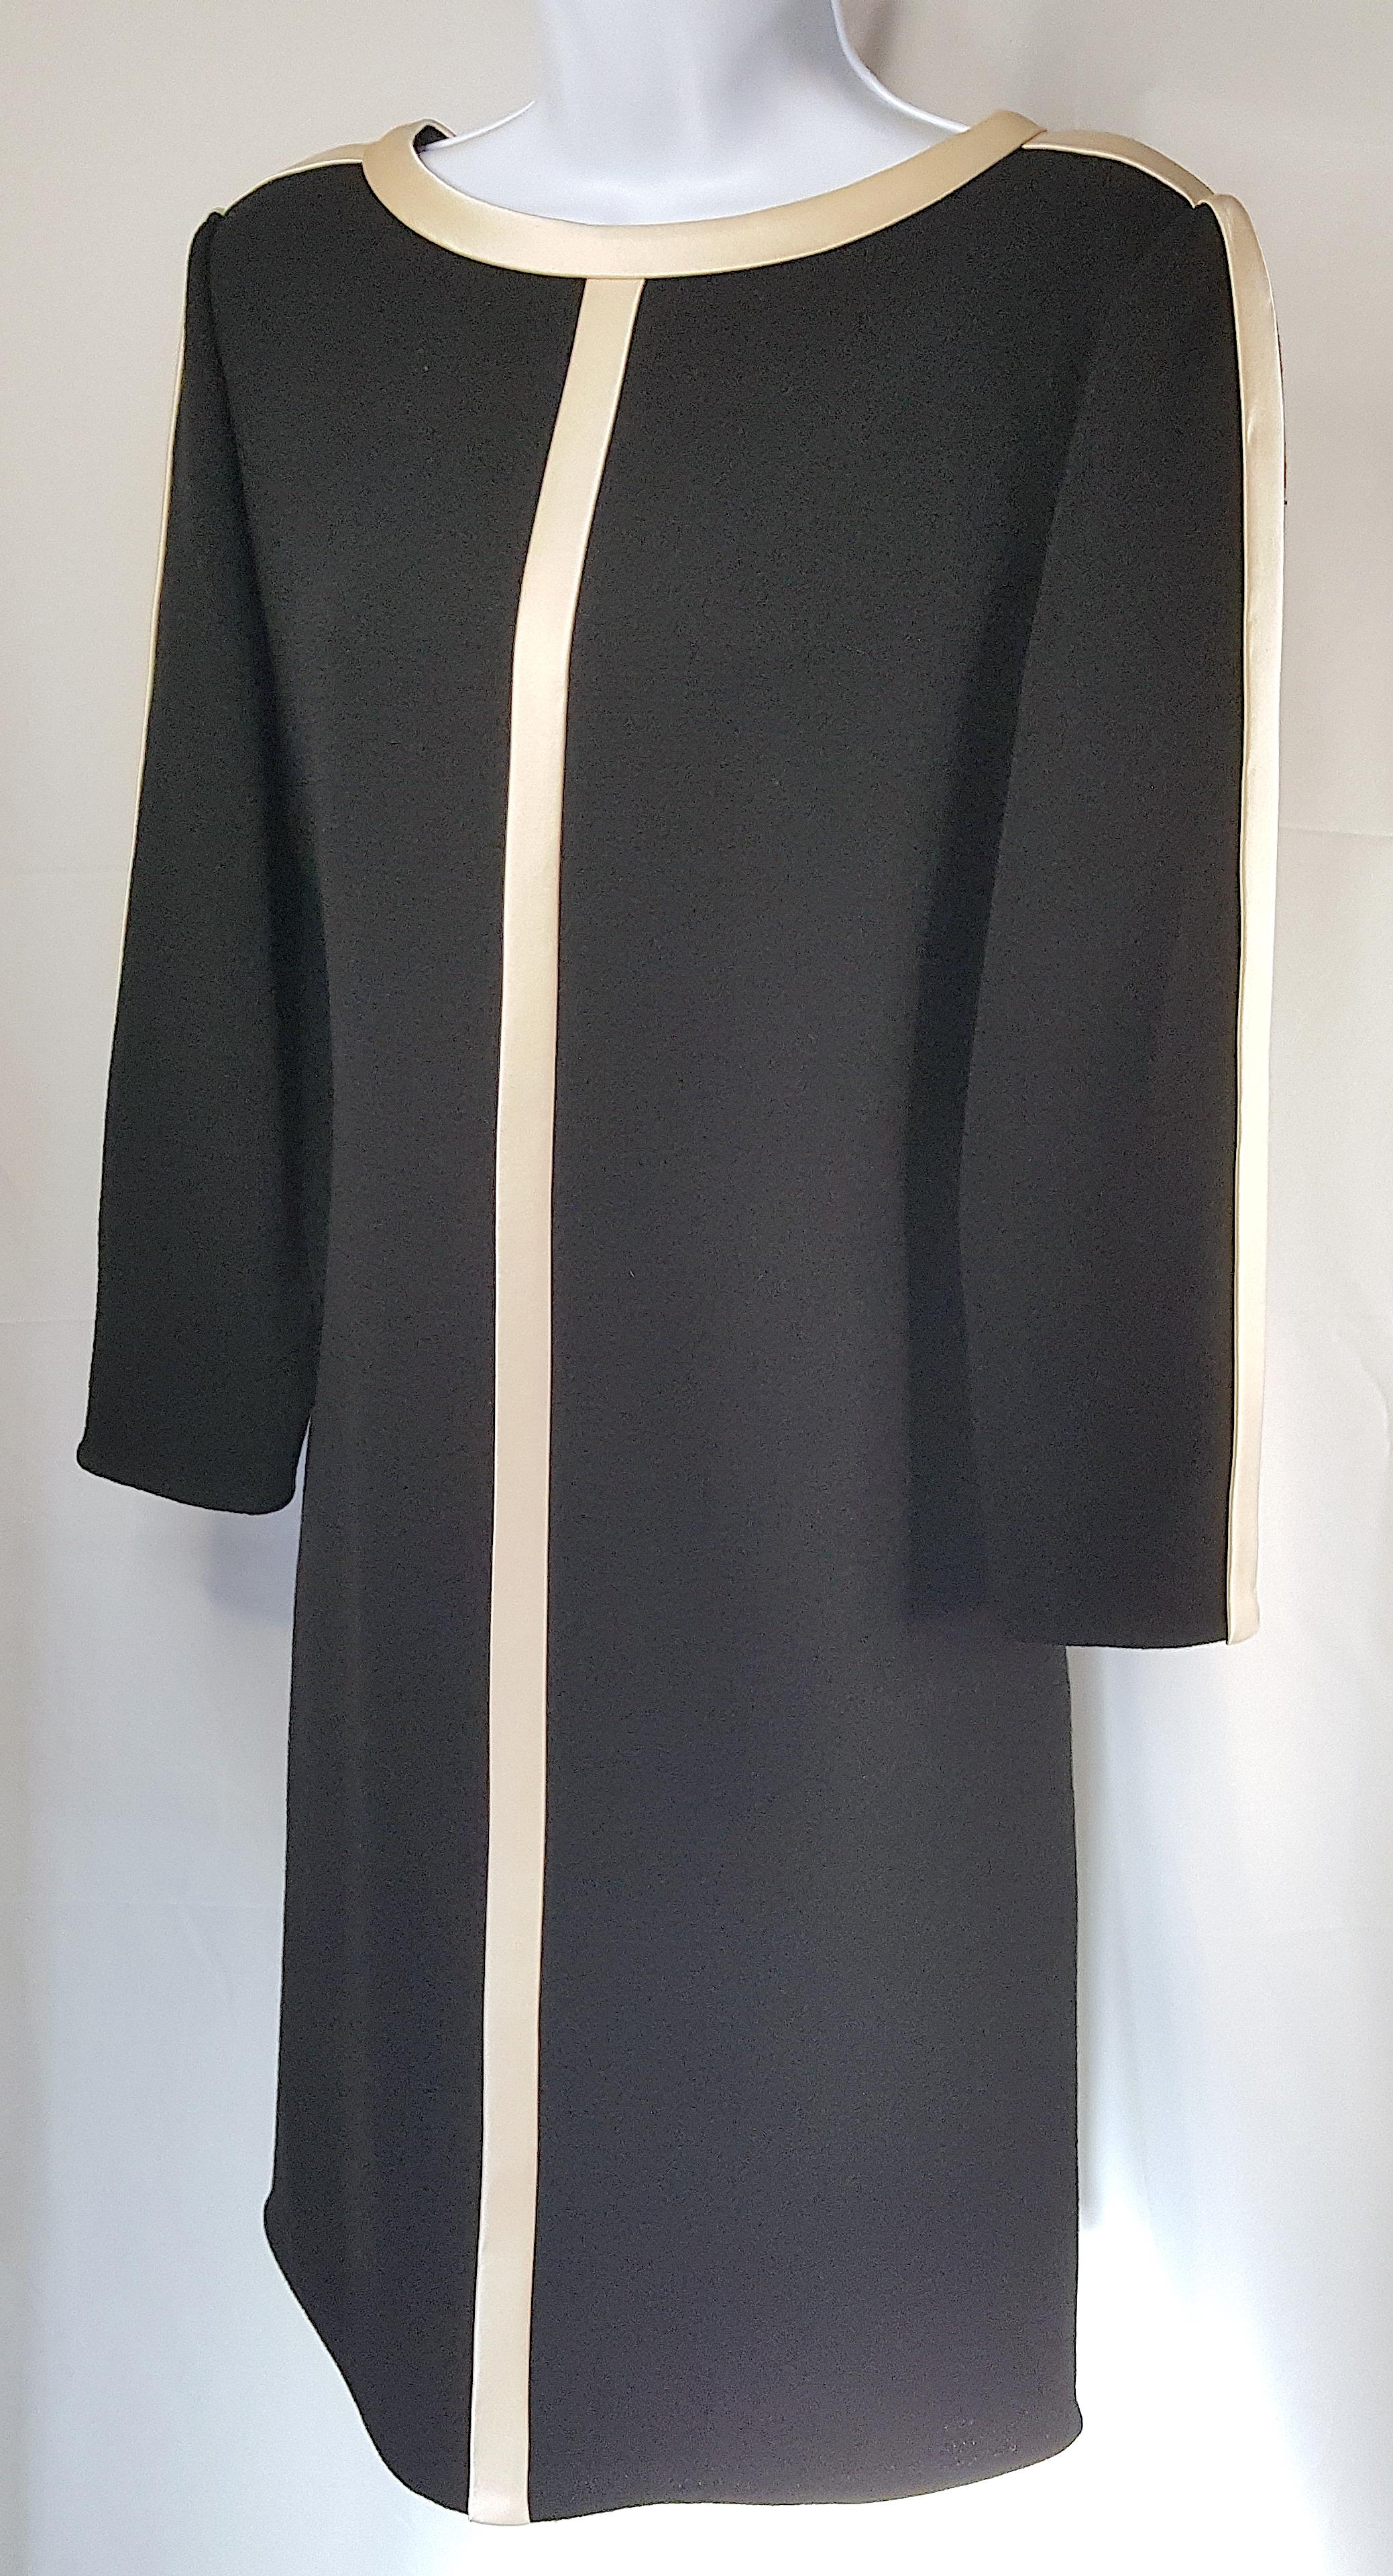 Vers 1970, lorsqu'il a lancé sa marque éponyme après être devenu un créateur de mode couture de premier plan au sein de la société new-yorkaise, l'Américain Bill Blass a créé cette robe droite à manches longues en crêpe de laine noire, élégante